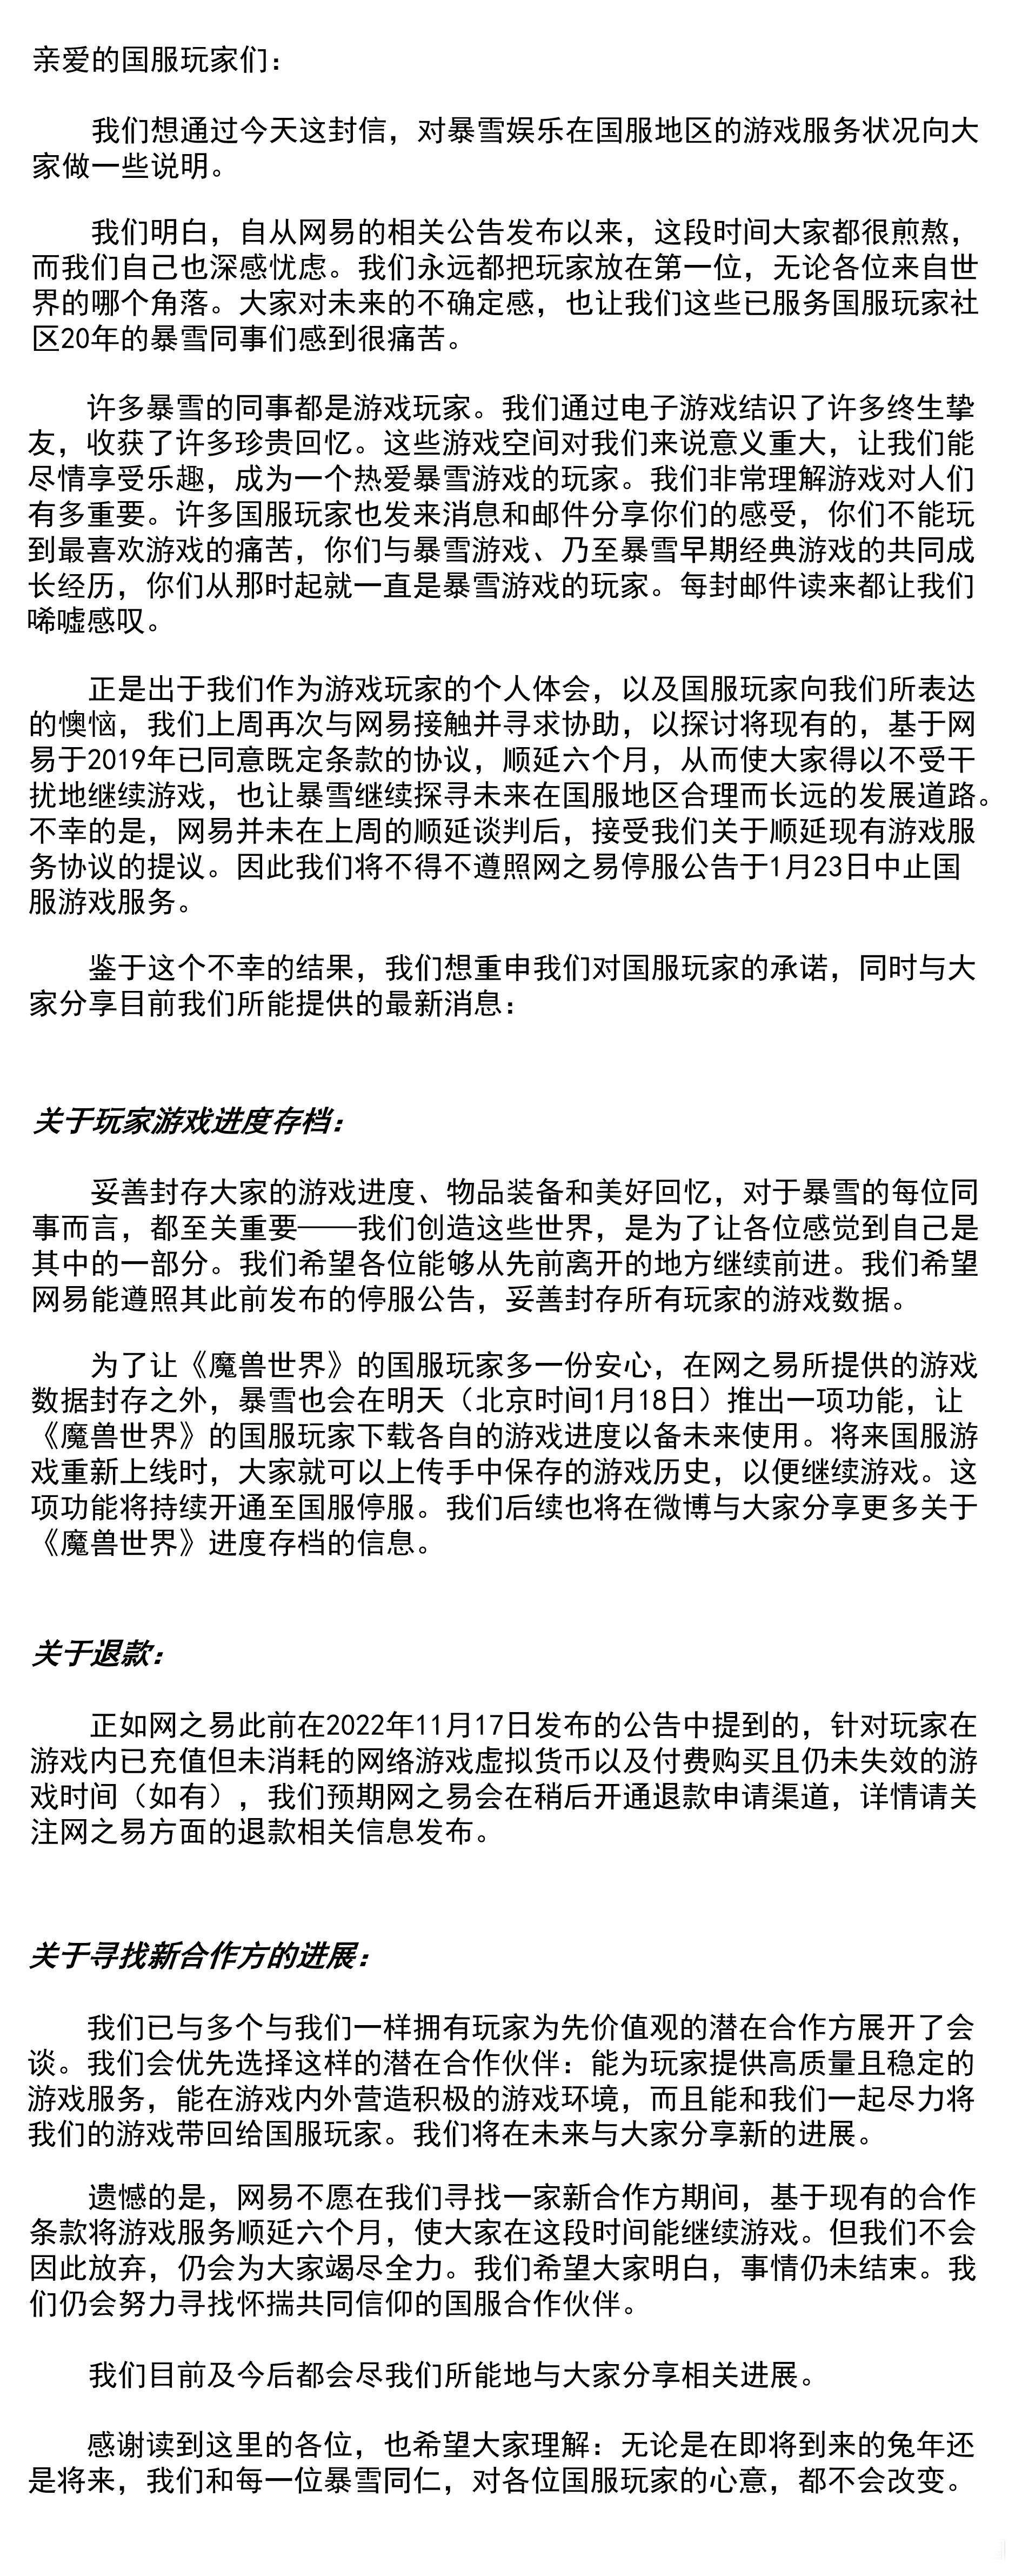 暴雪中国发布声明：网易拒绝服务顺延六个月协议